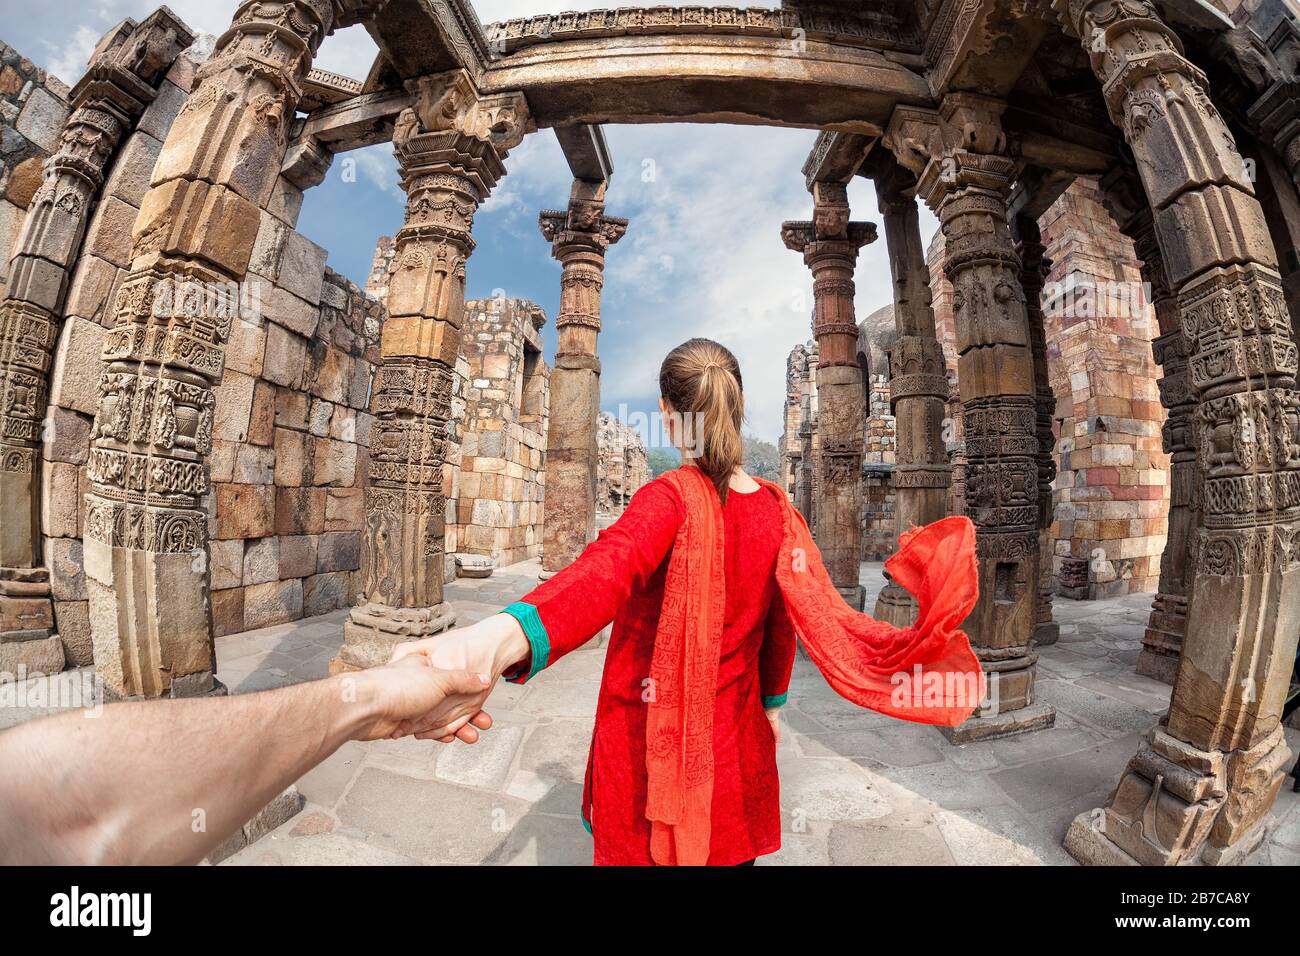 Mujer en traje rojo con bufanda que lleva al hombre a mano a la torre de Qutub Minar en Delhi, India Foto de stock